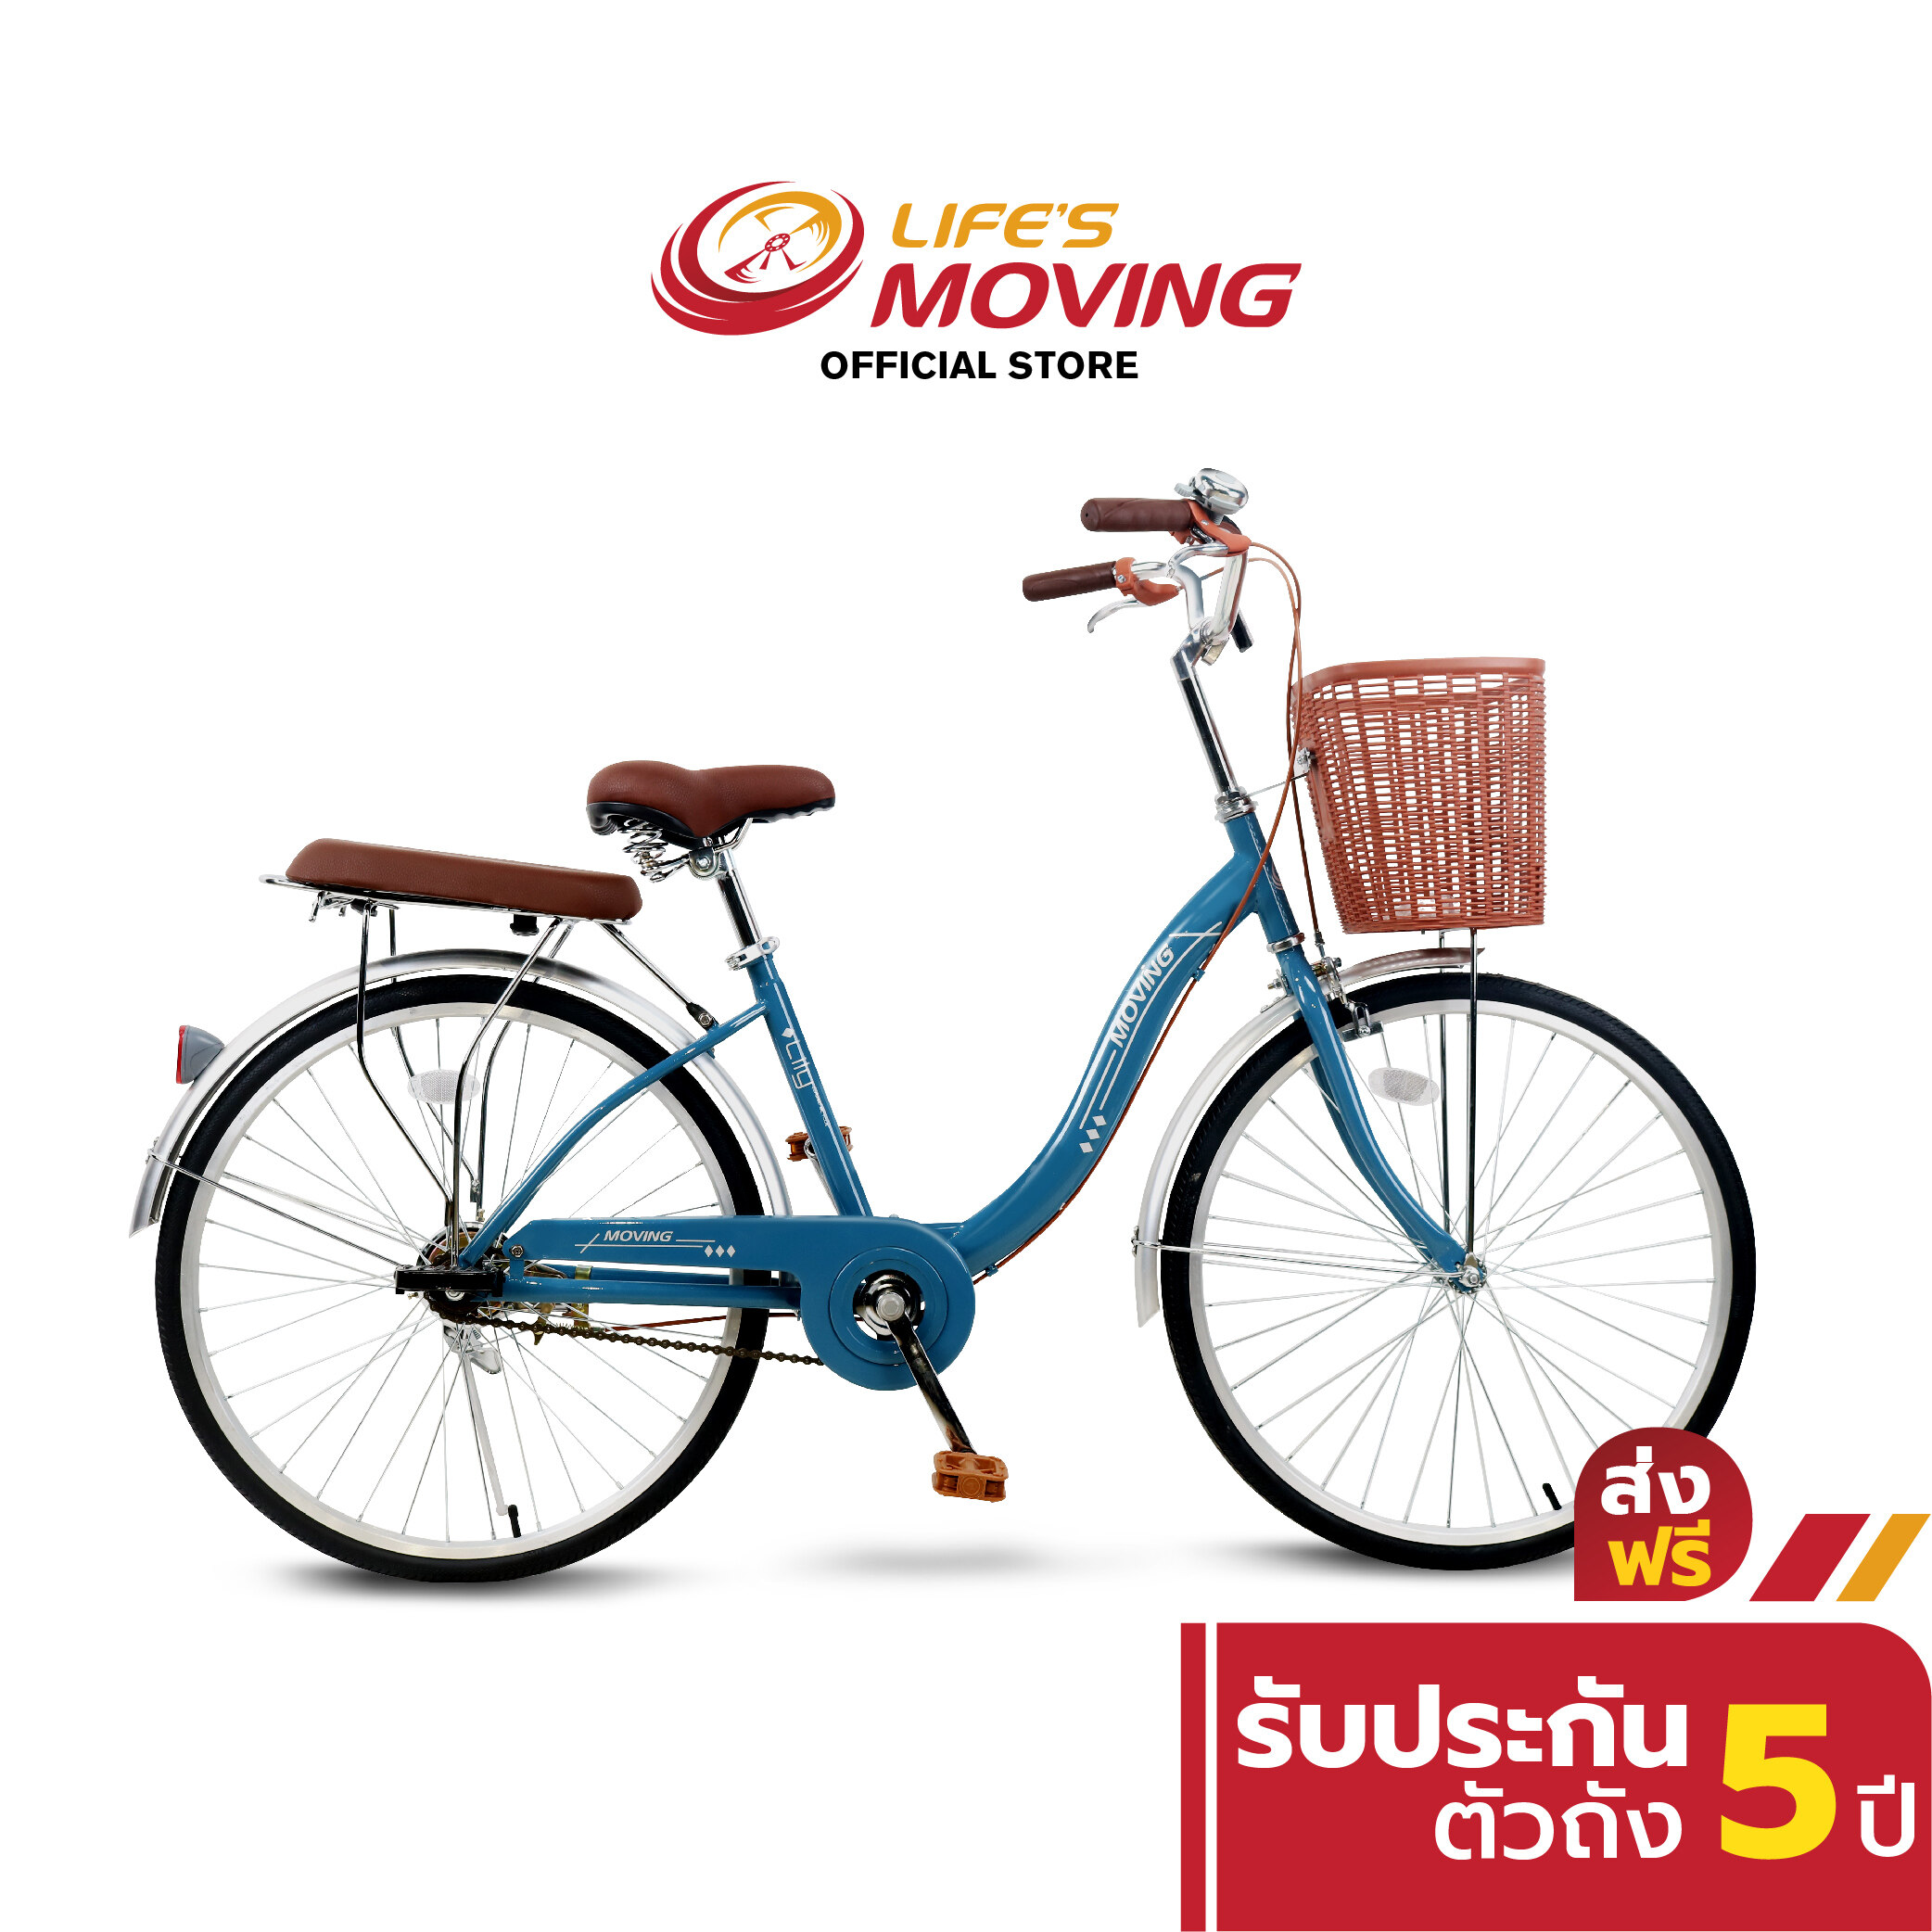 จักรยานแม่บ้าน Moving รุ่น LILY จักรยาน 2 ล้อ ขนาด 24 นิ้ว จักรยานญี่ปุ่น ดีไซน์คลาสสิค โฉบเฉี่ยว คล่องตัว